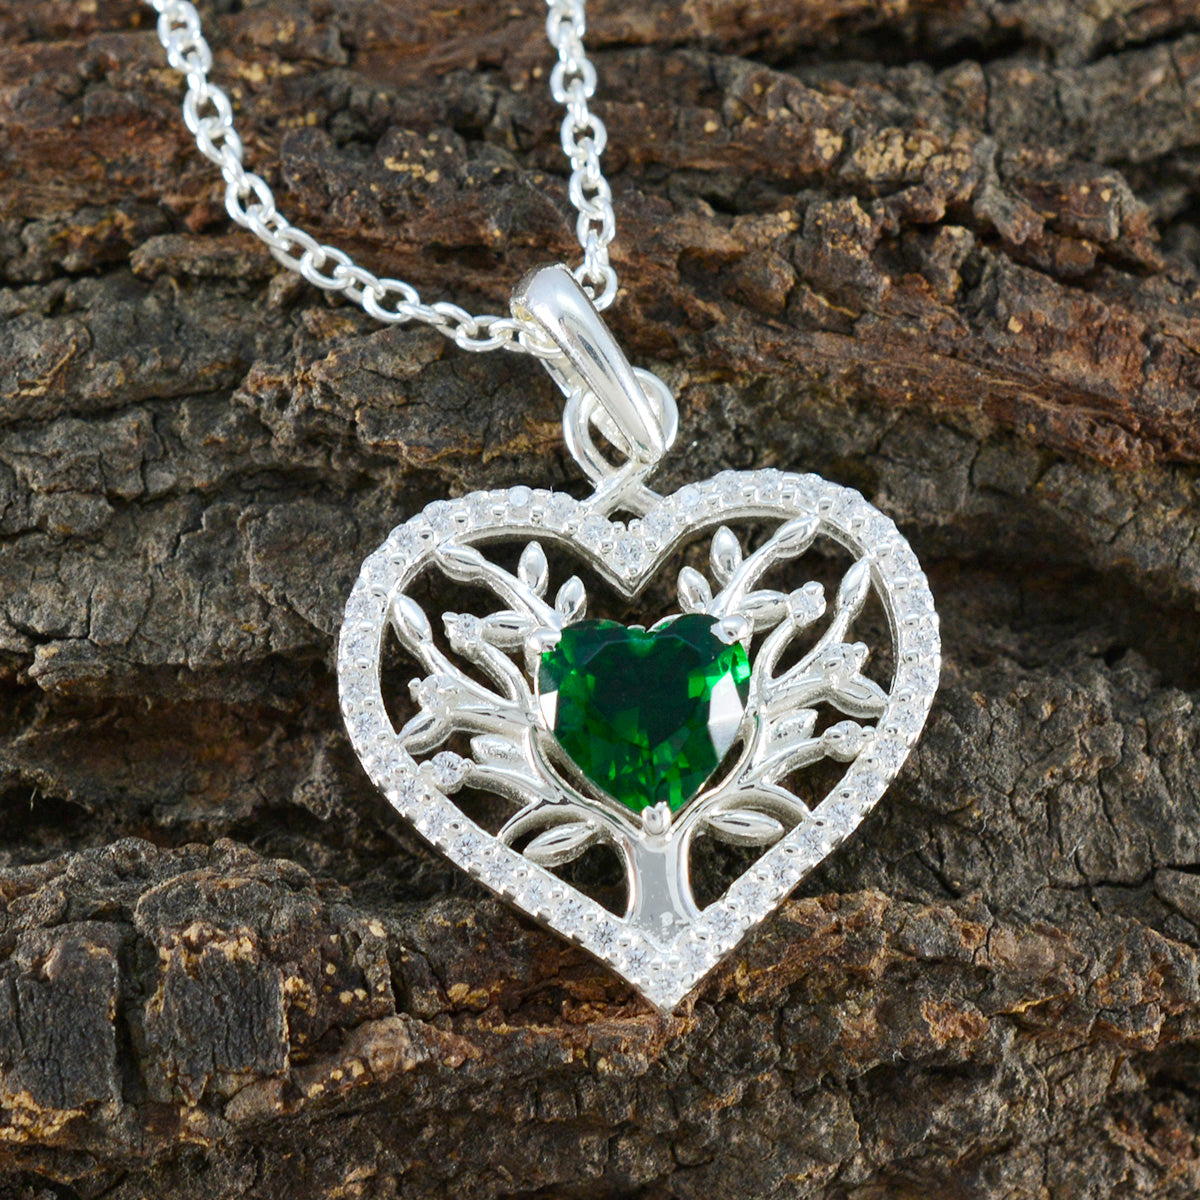 riyo affascinante pietra preziosa cuore sfaccettato verde smeraldo cz ciondolo in argento sterling 1151 regalo per la festa degli insegnanti